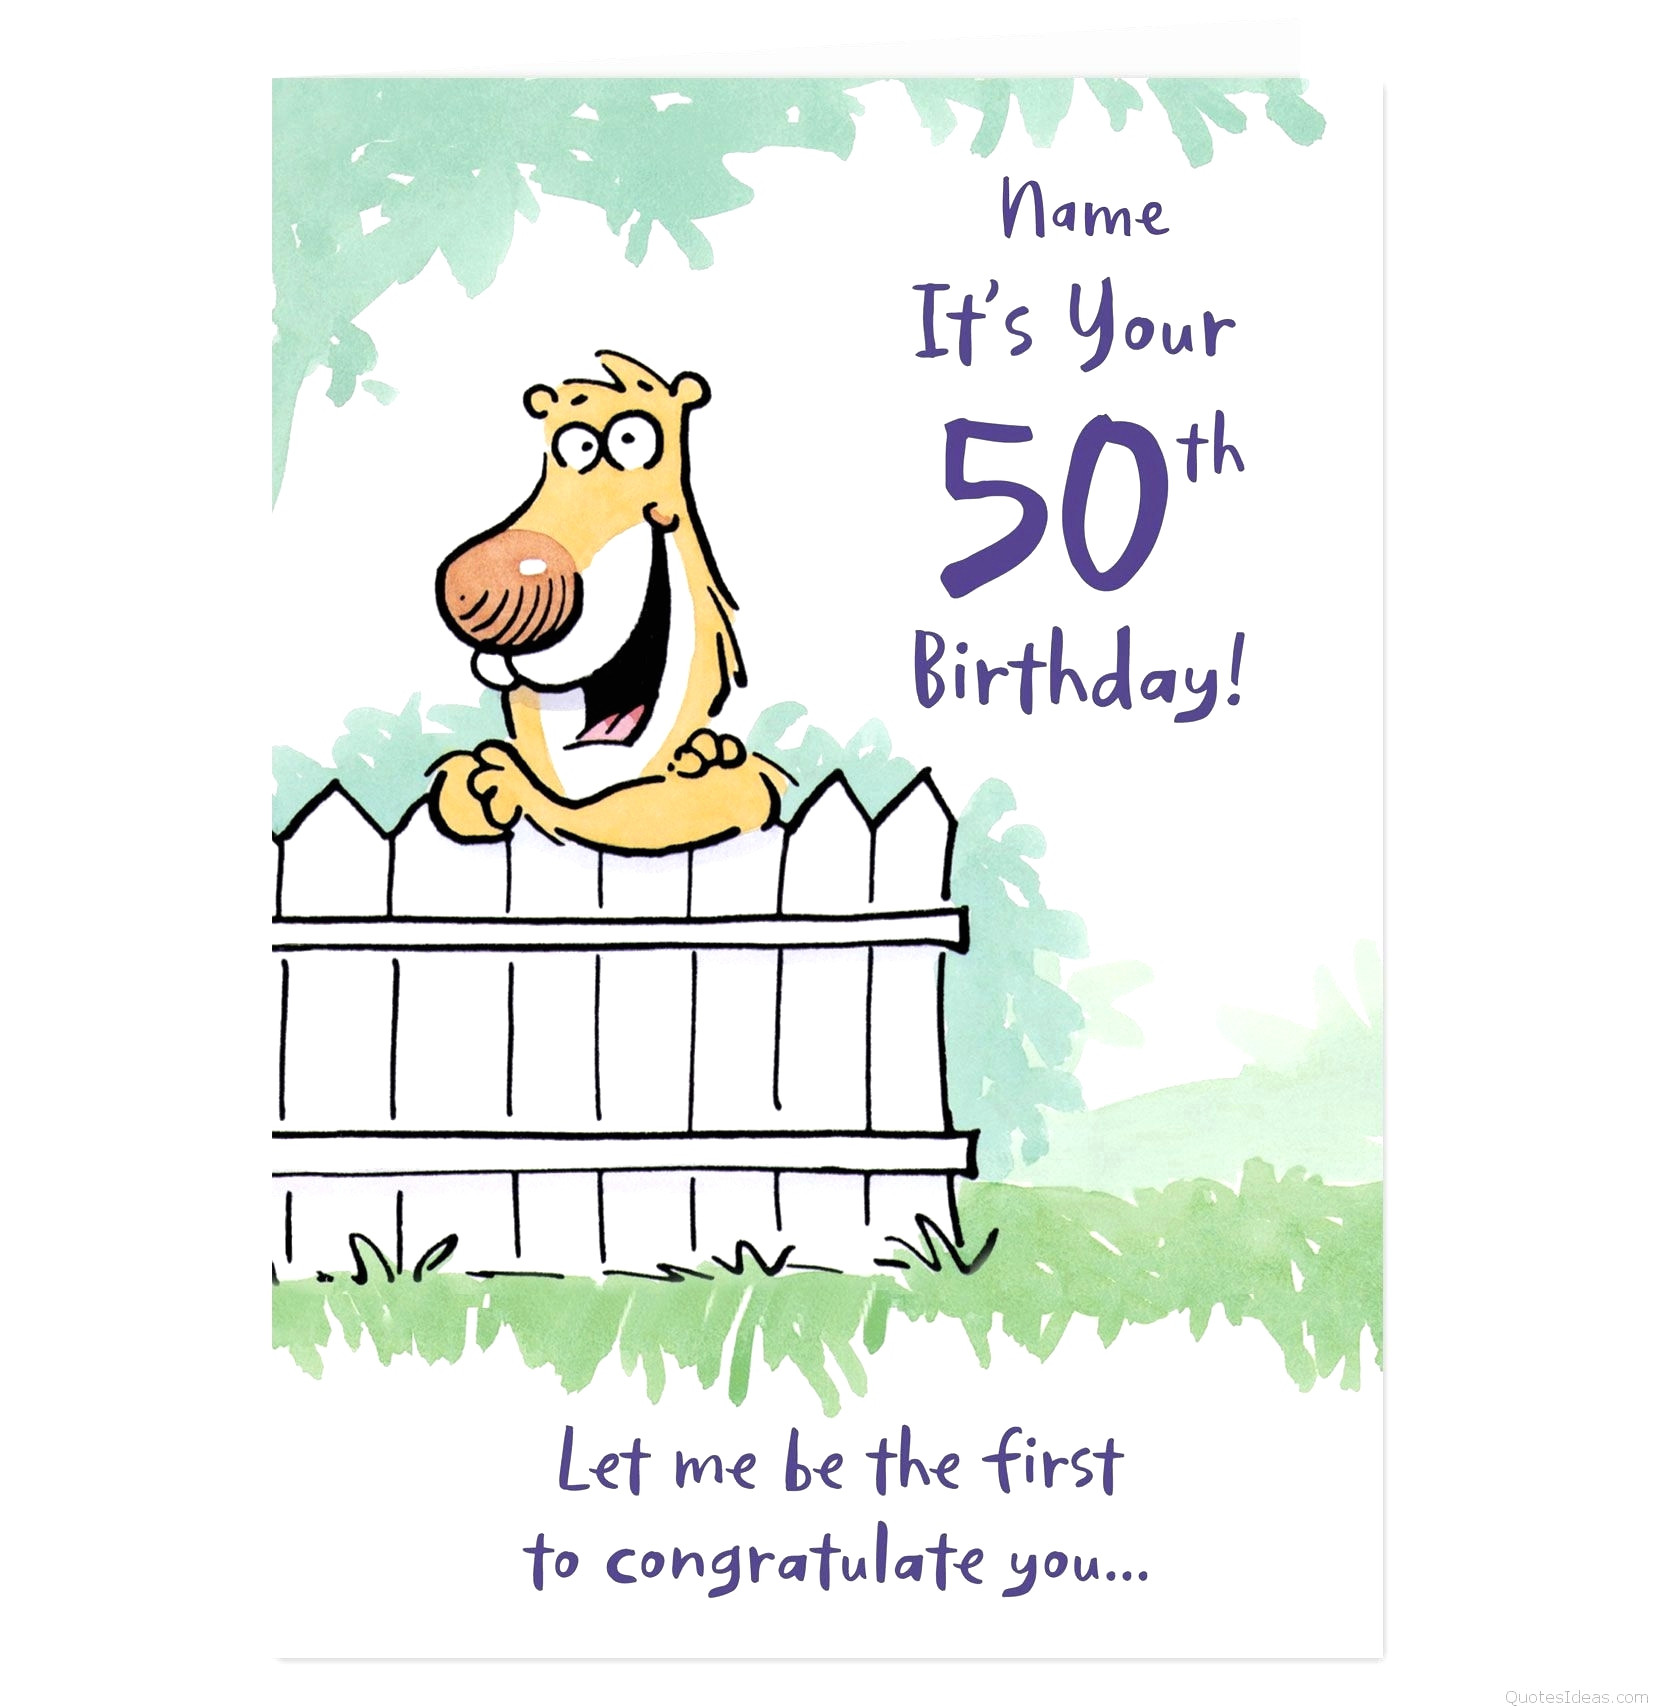 bilder happy birthday kostenlos luxus free birthday cards creative birthday cards elegant of bilder happy birthday kostenlos jpg